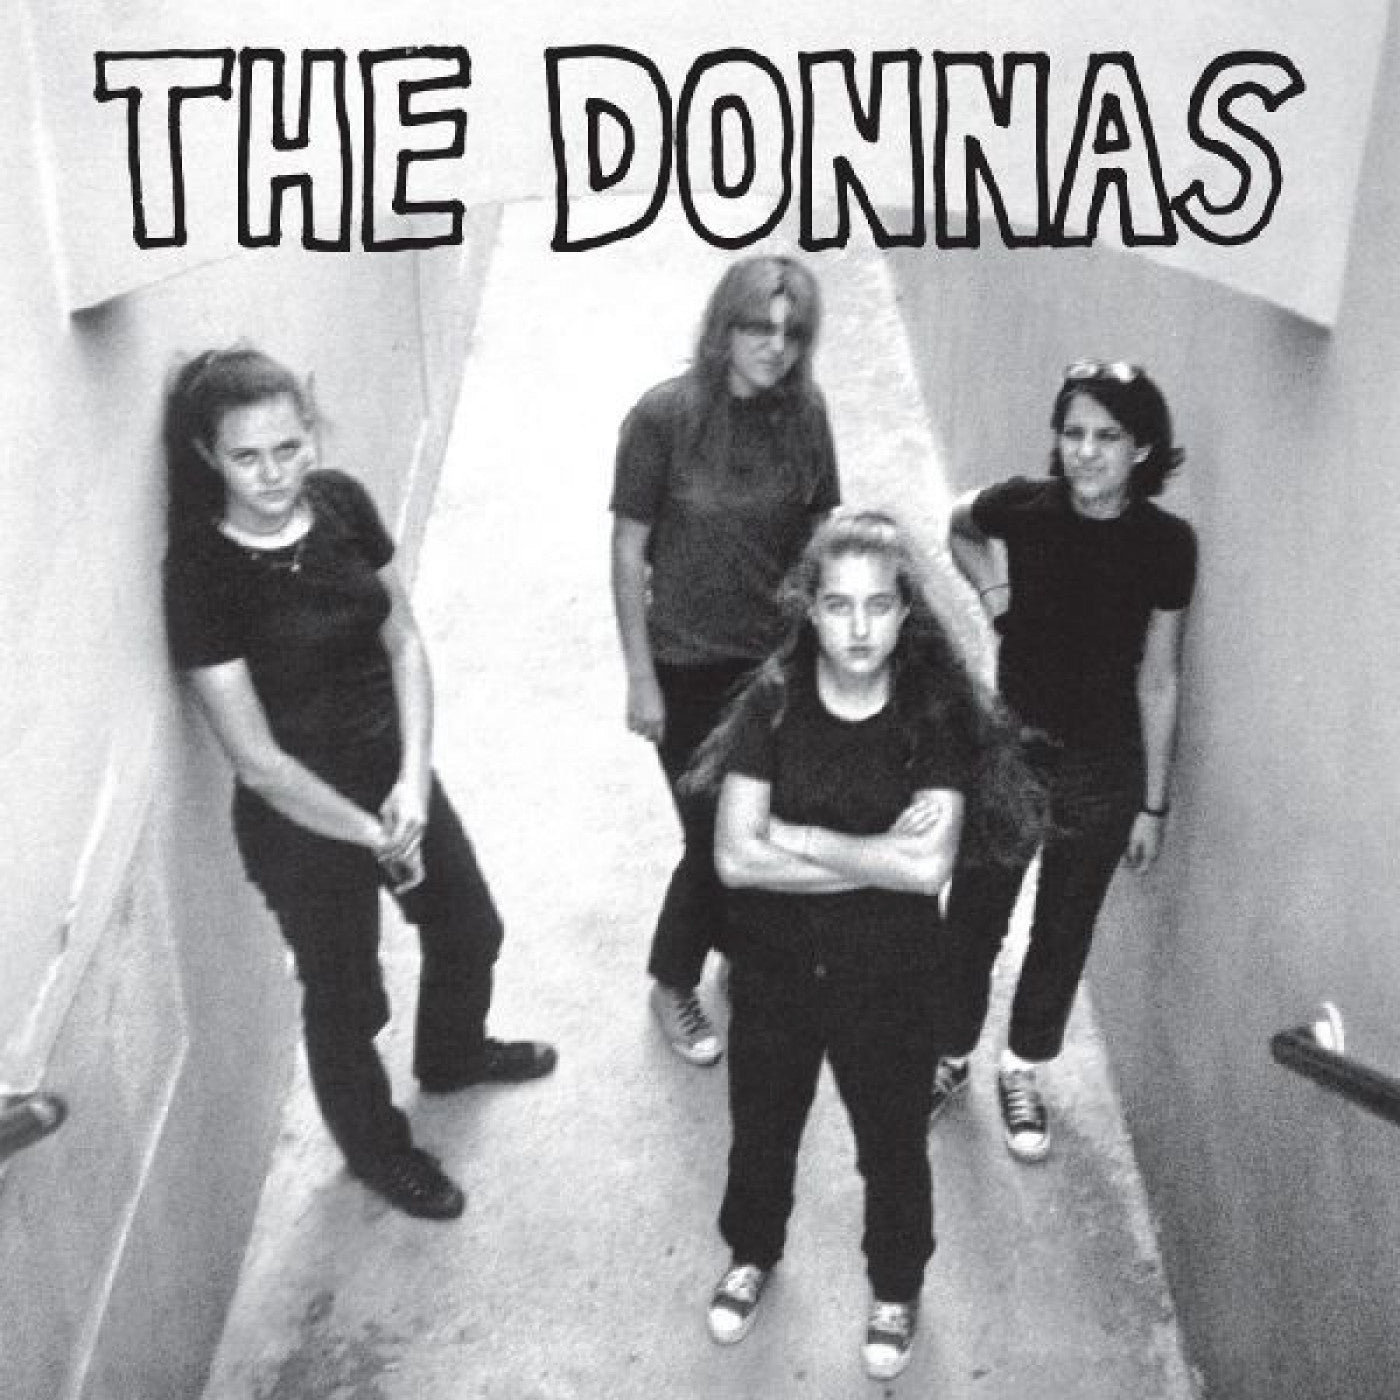 THE DONNAS - THE DONNAS Vinyl LP